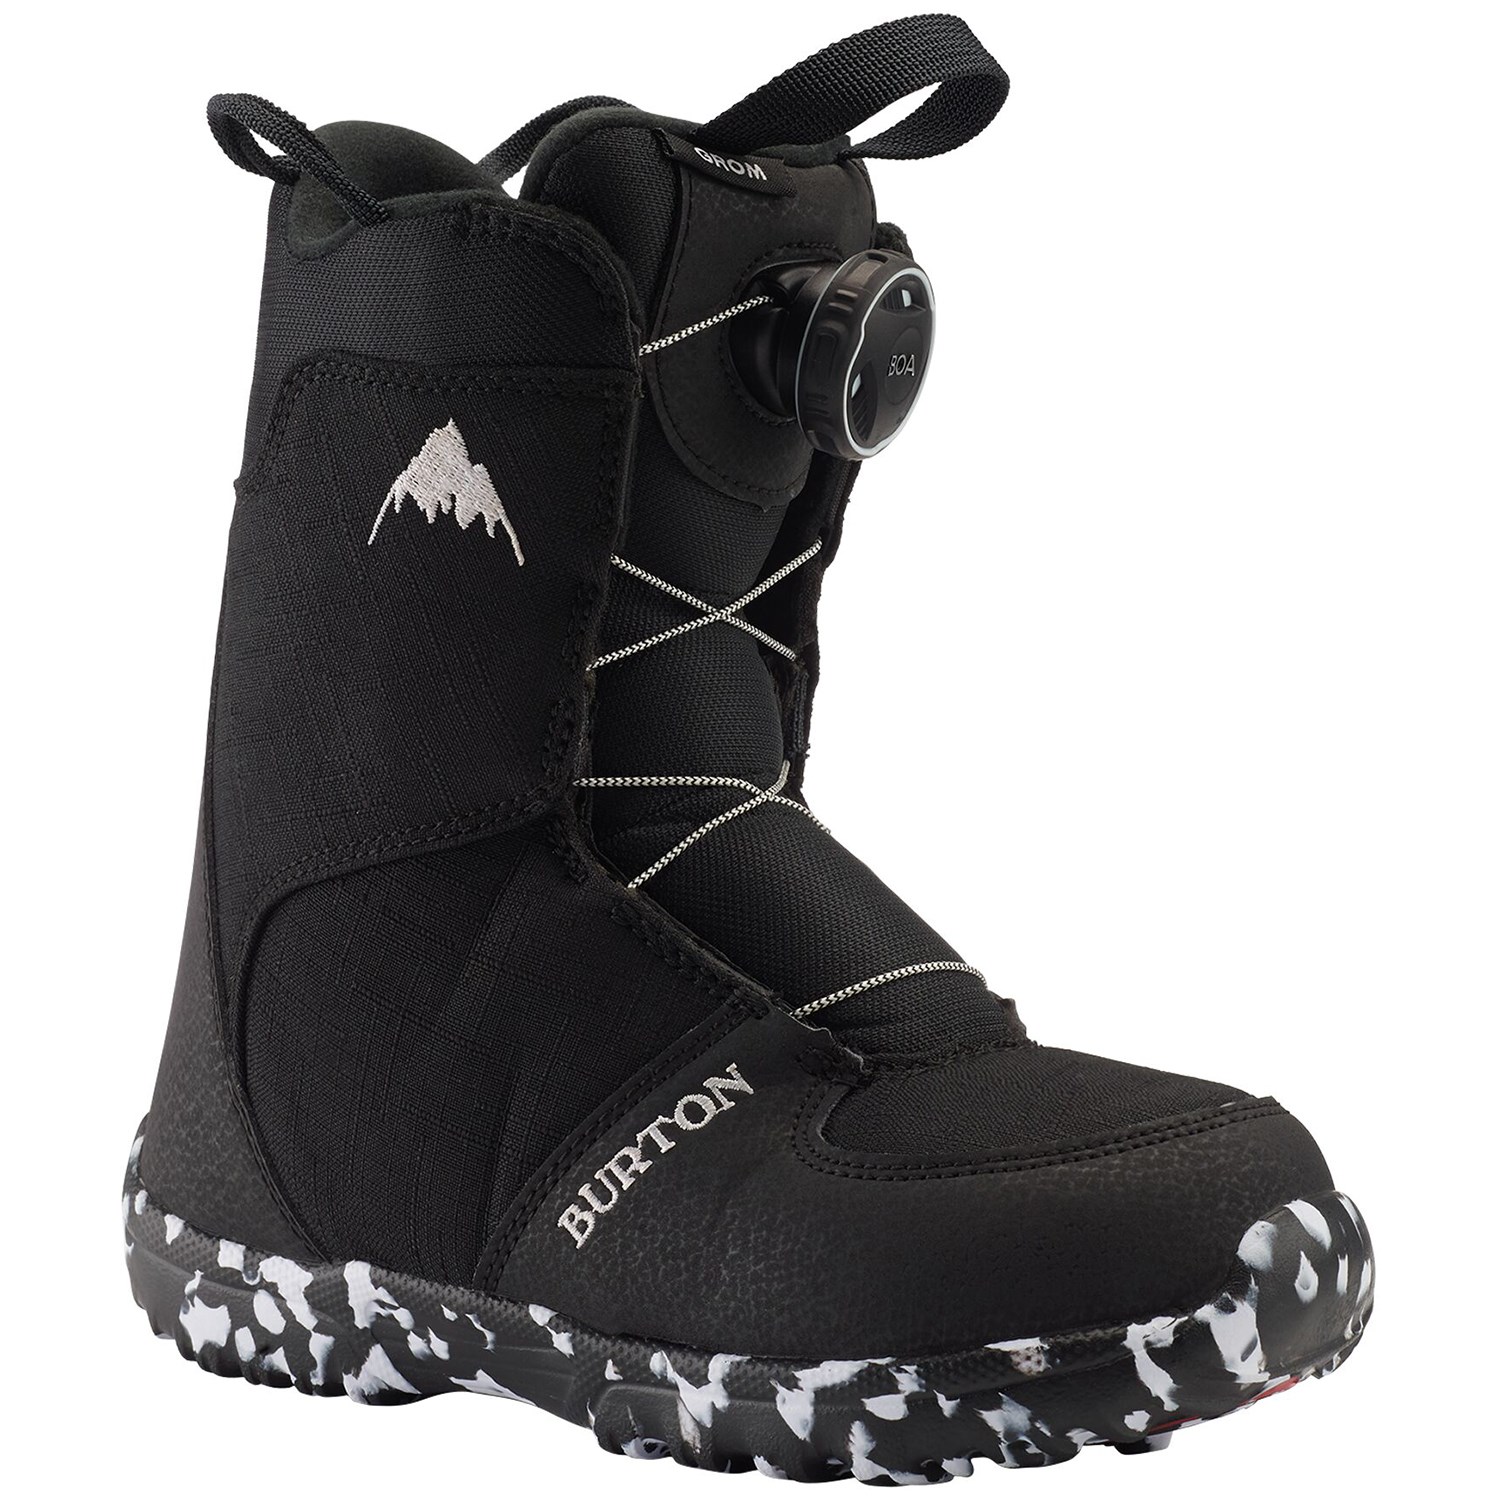 Ботинки Burton Grom Boa для сноуборда, черный детские сноубордические ботинки burton grom boa р 11c white